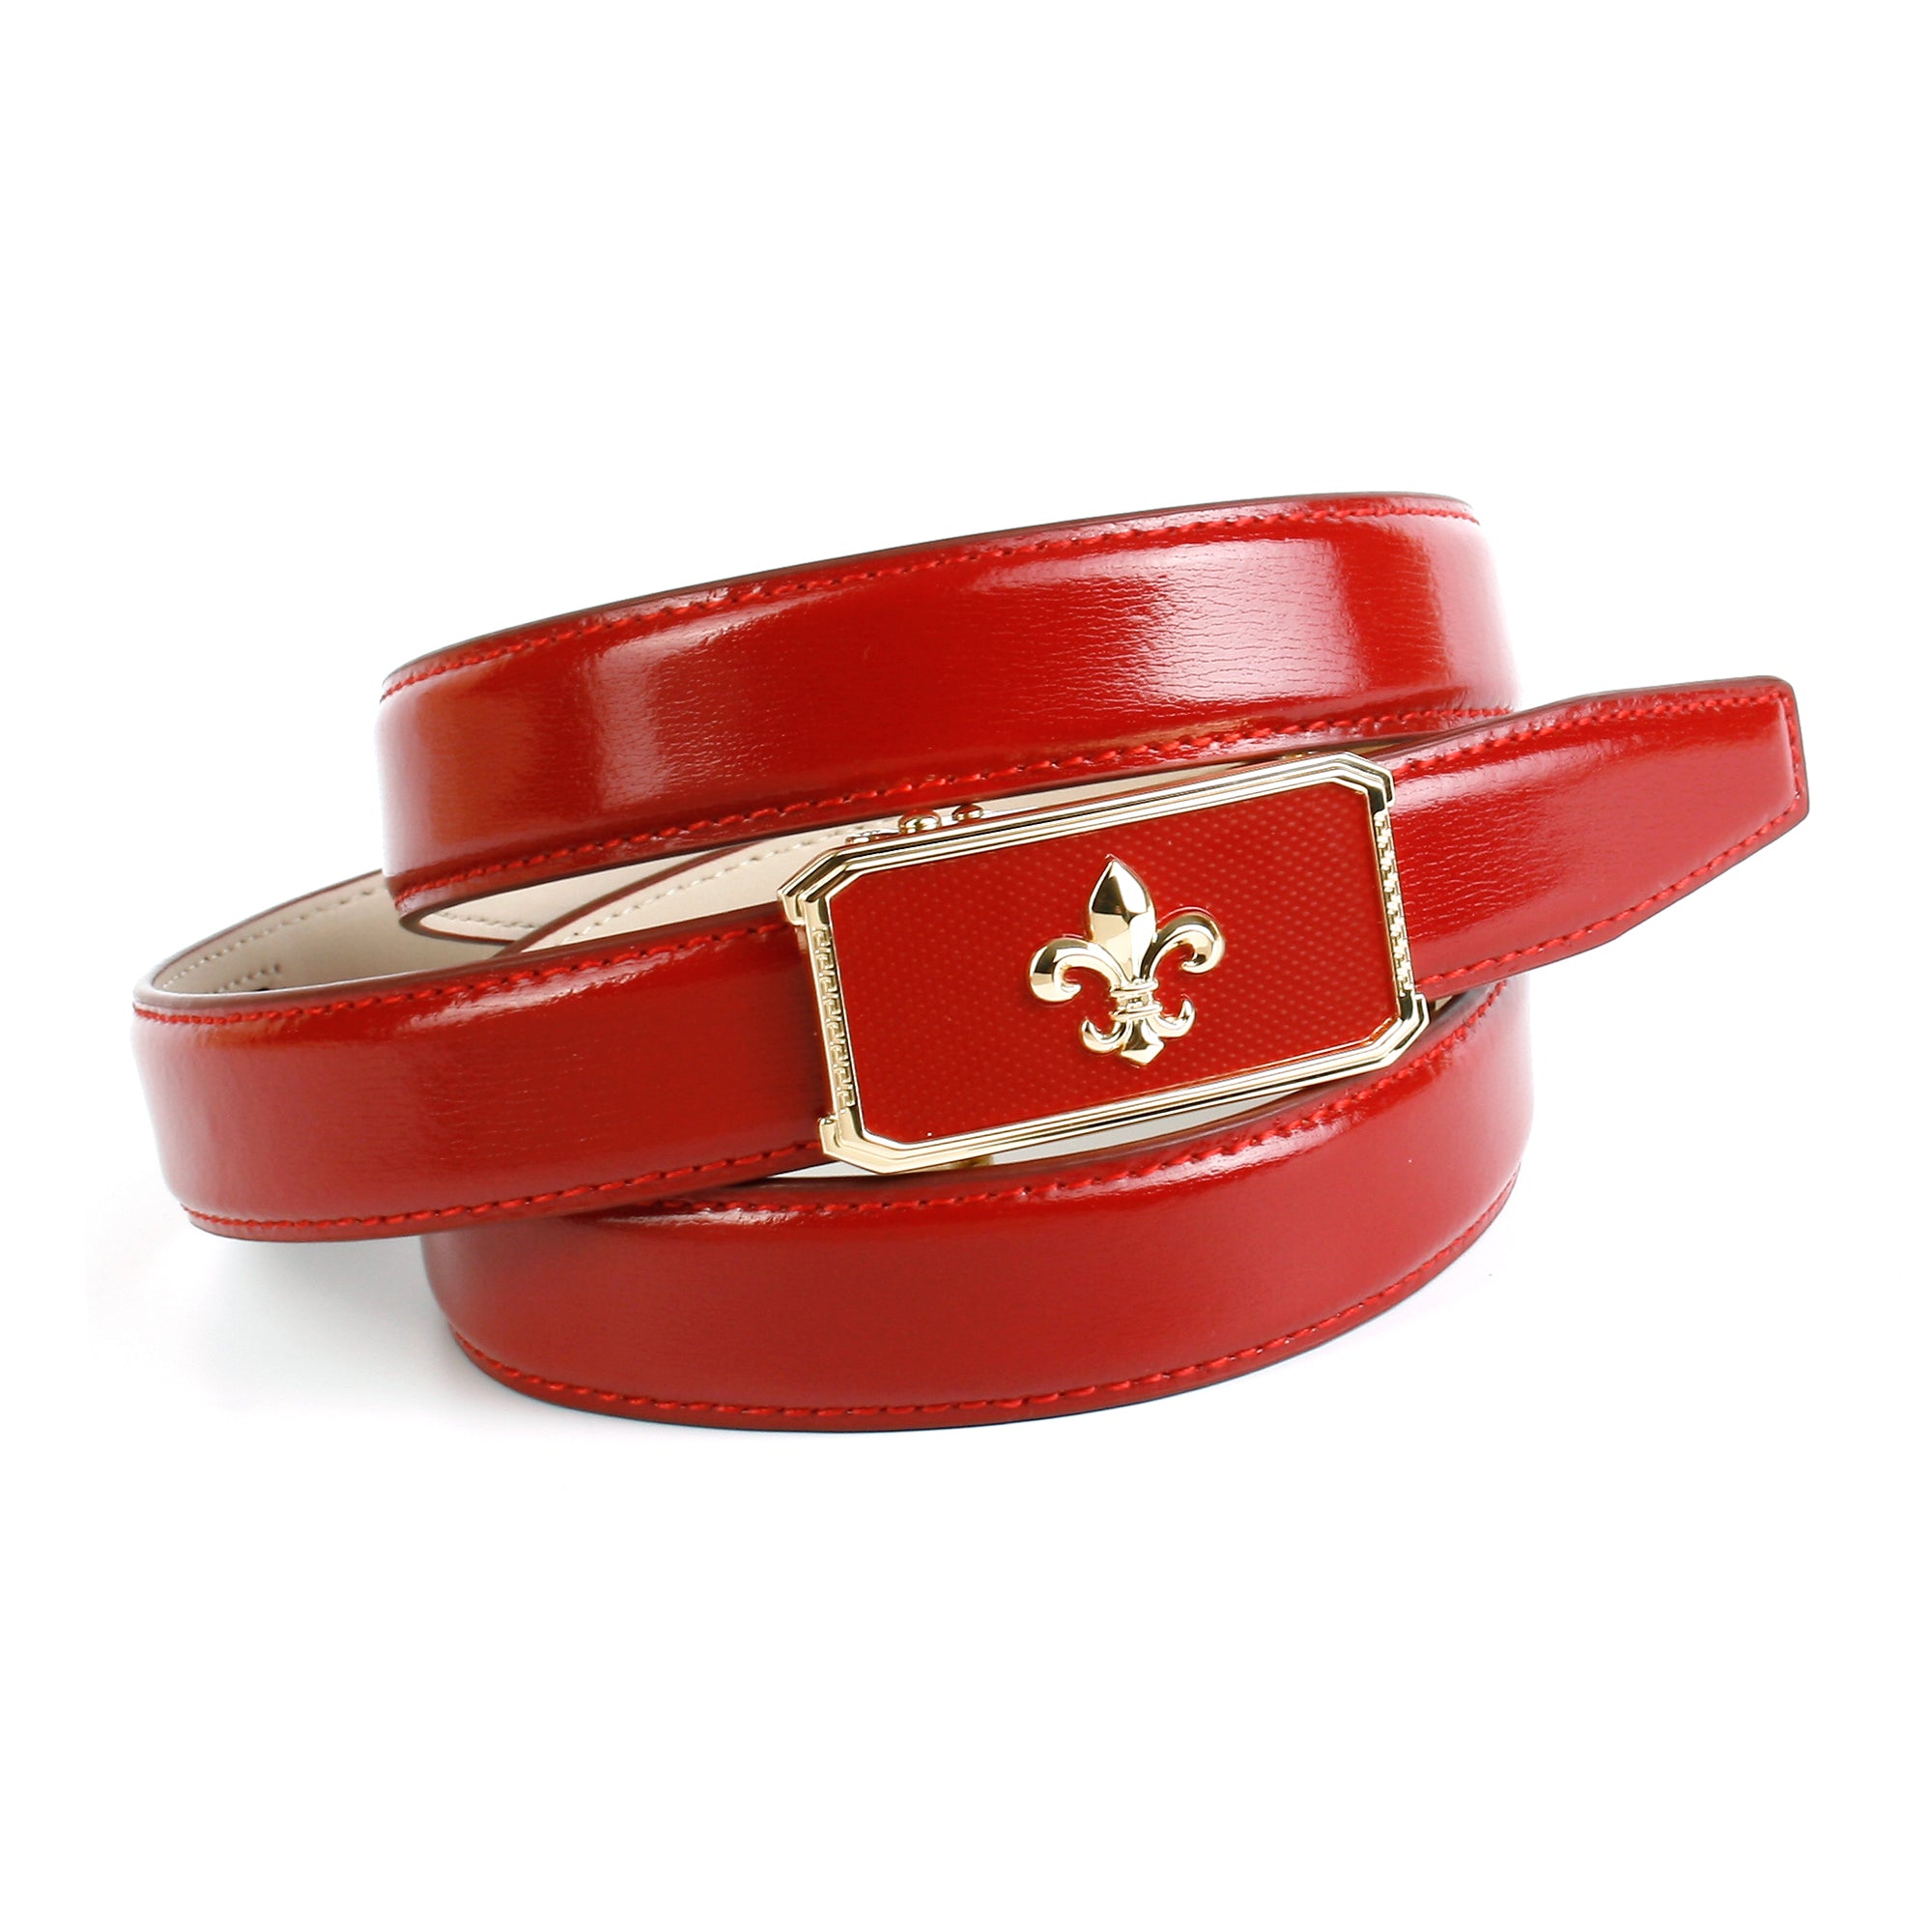 Ledergürtel in Rot mit eleganter Schließe – anthonicrown | Anzuggürtel